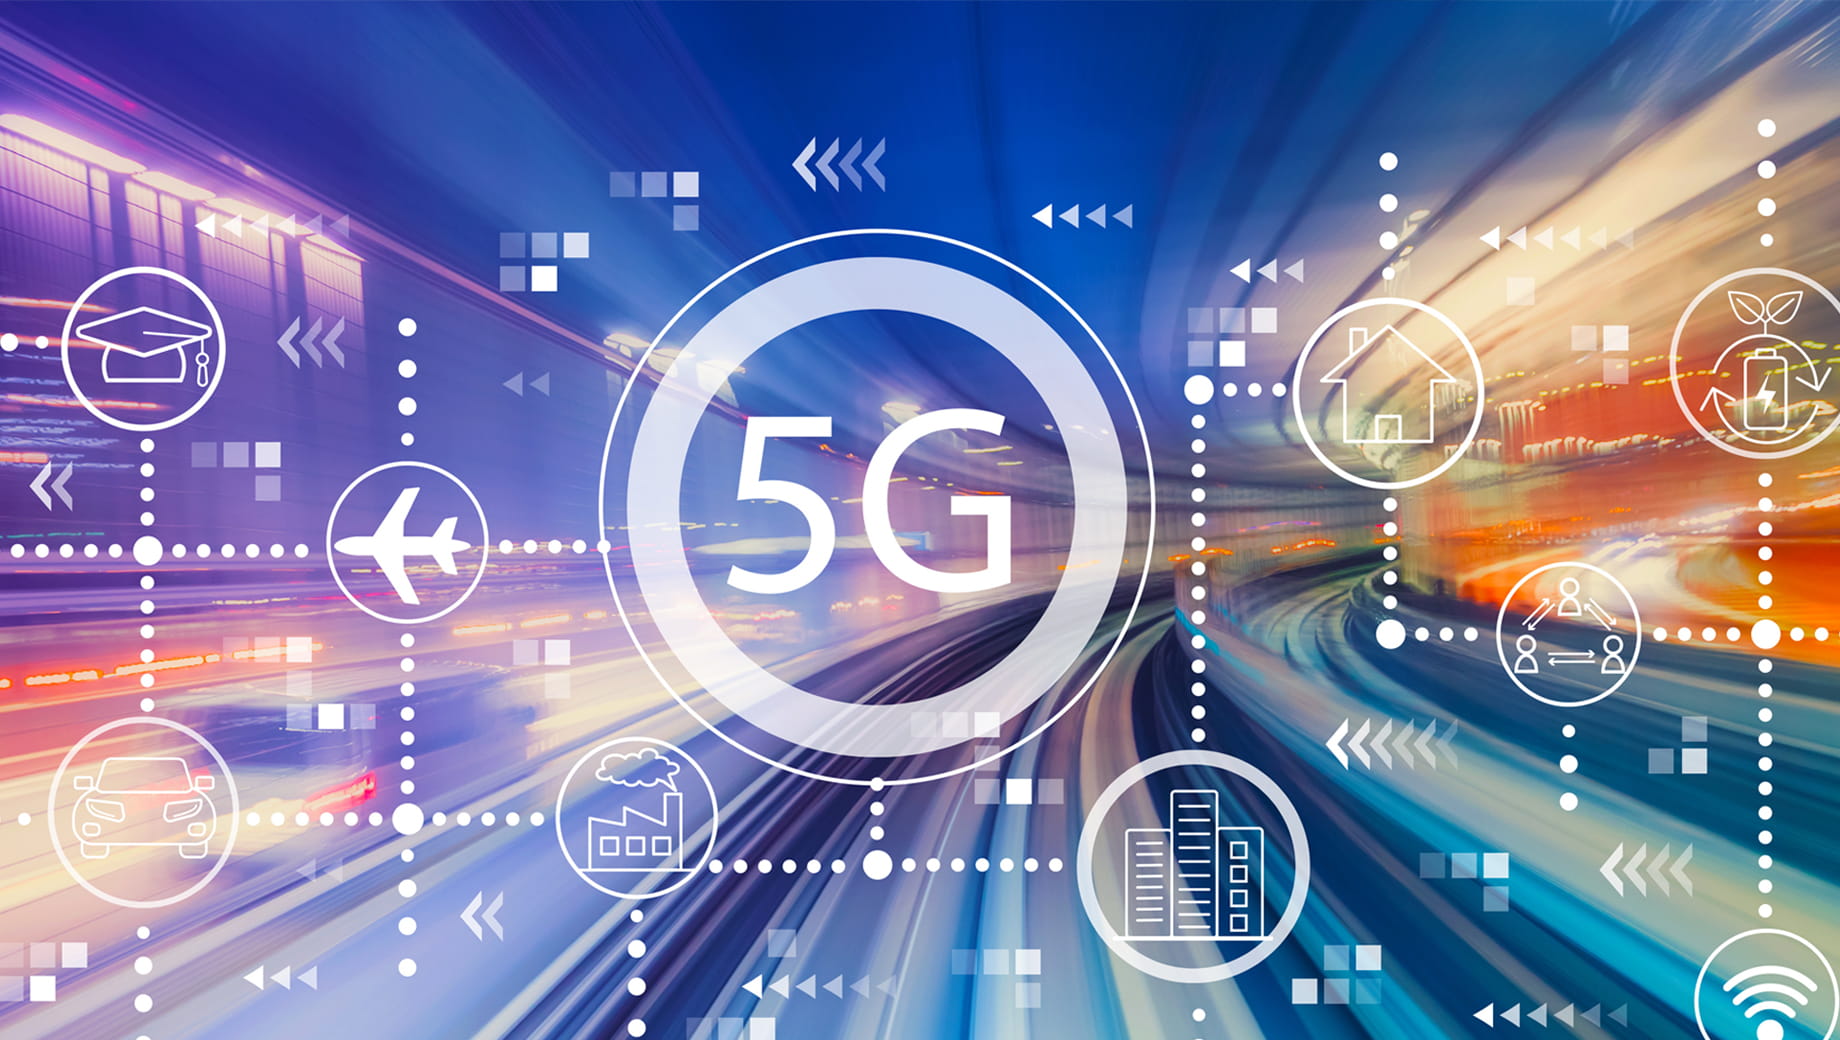 次世代通信ネットワーク「5G」を支えるプロジェクト